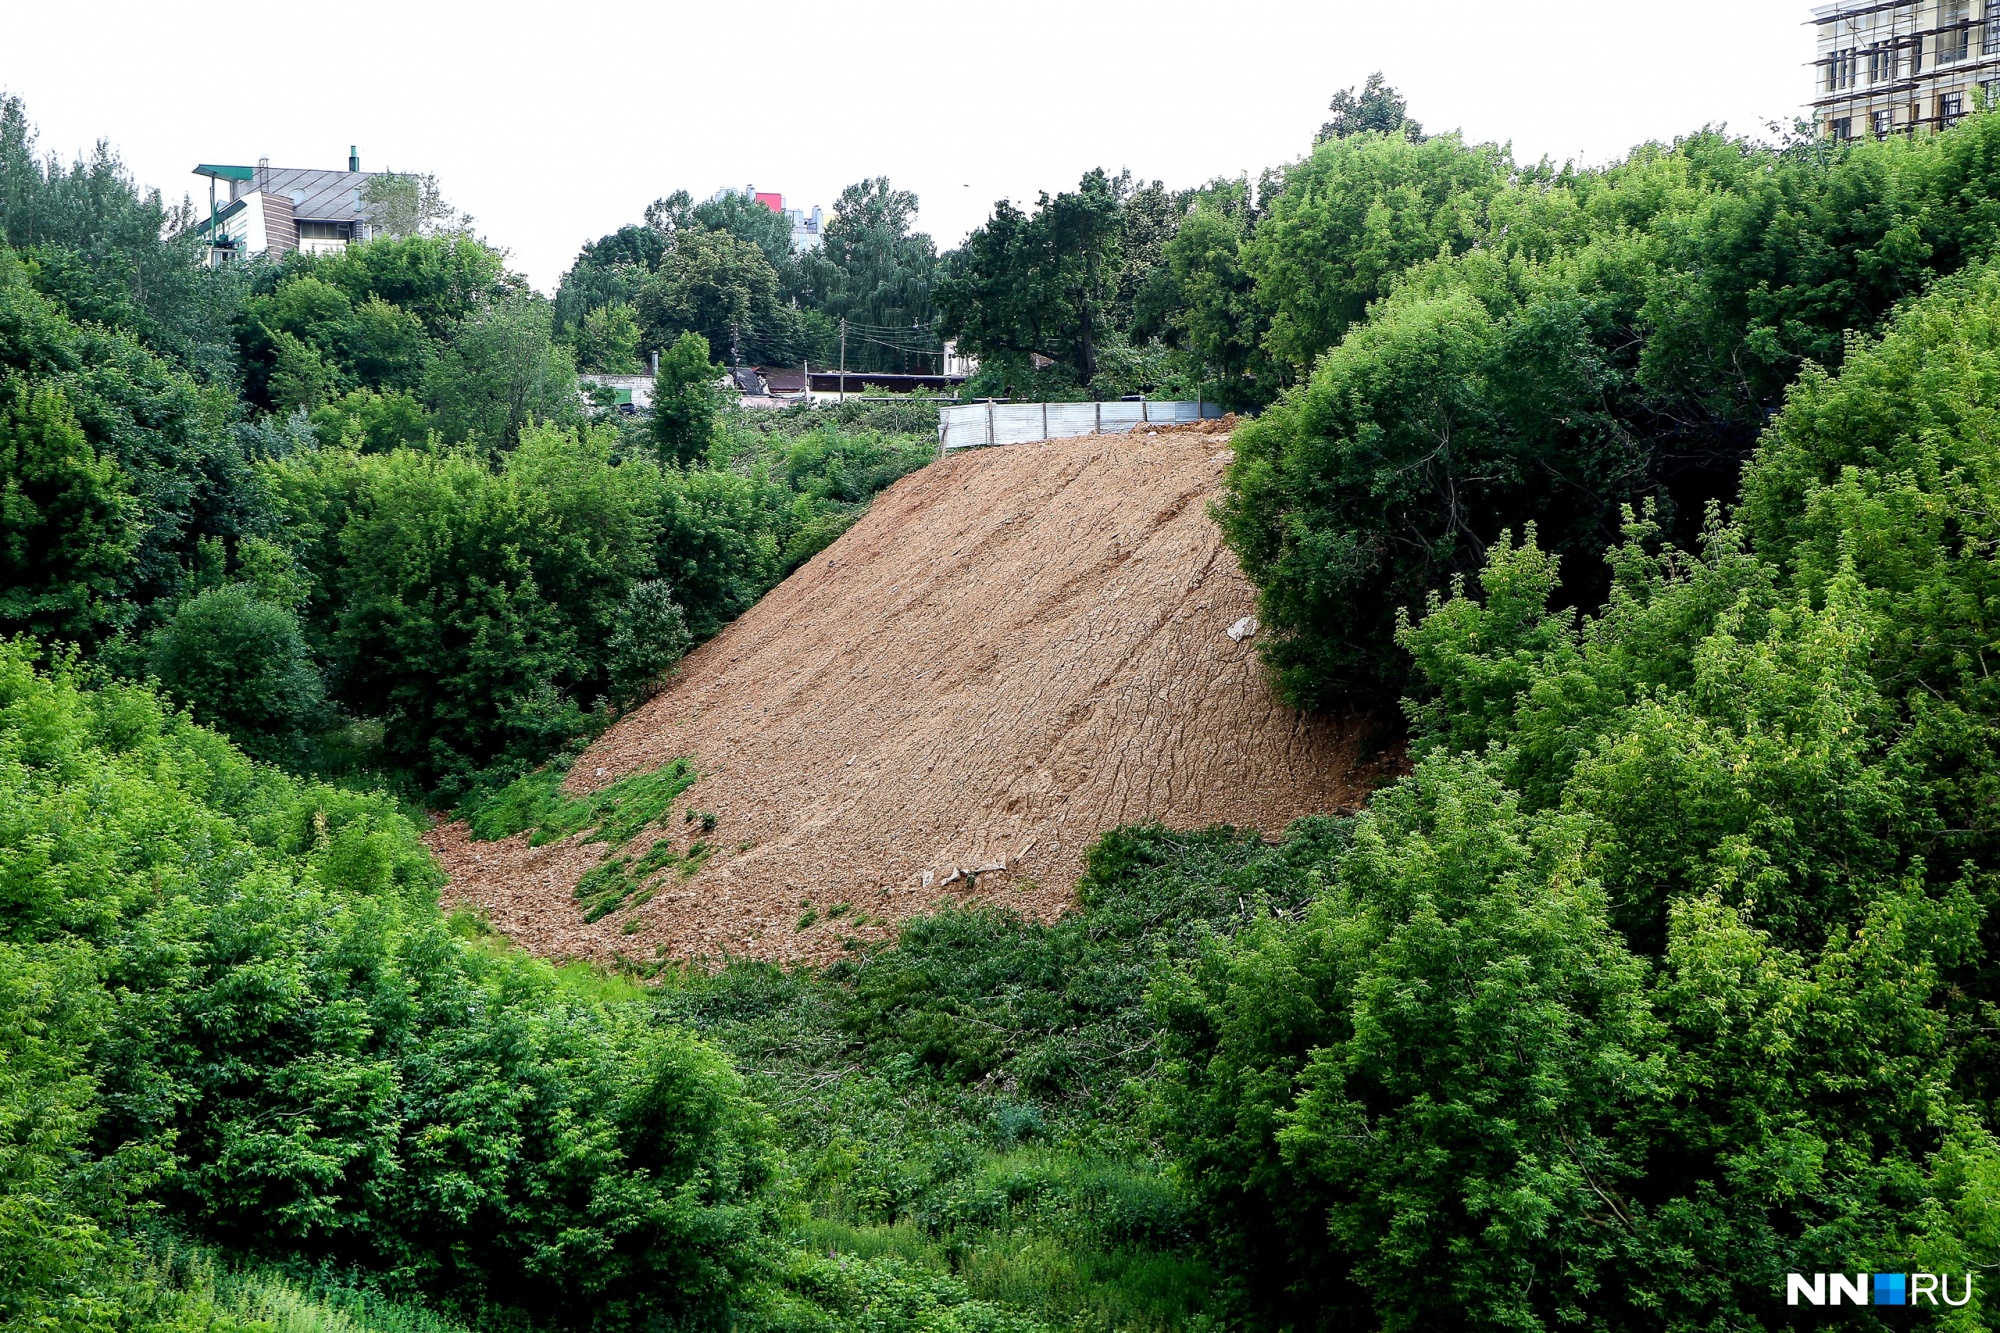 Власти рассказали о причинах сноса домов при строительстве террасного парка в Почаинском овраге